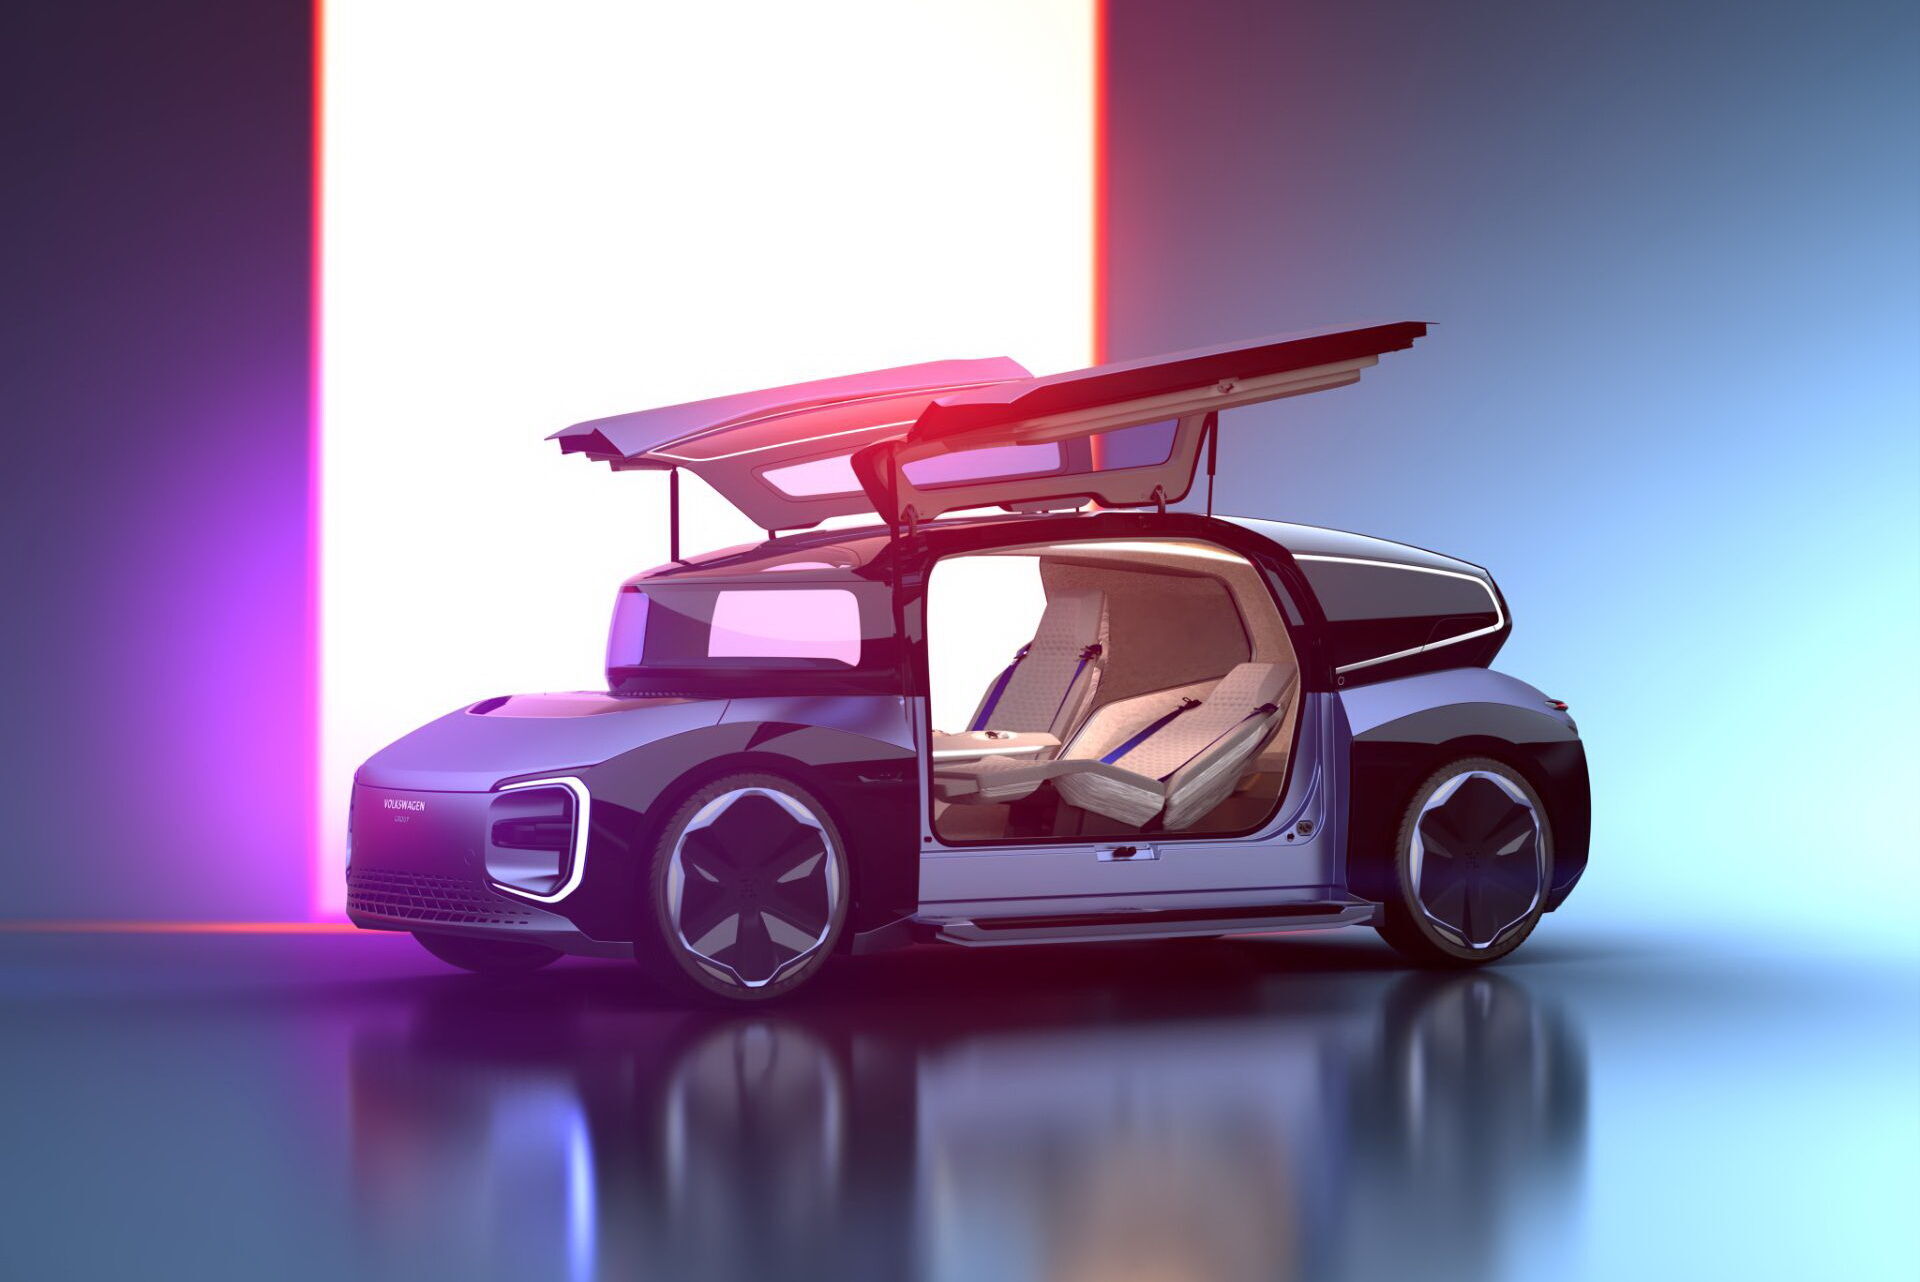 Volkswagen показав туристичний автомобіль майбутнього